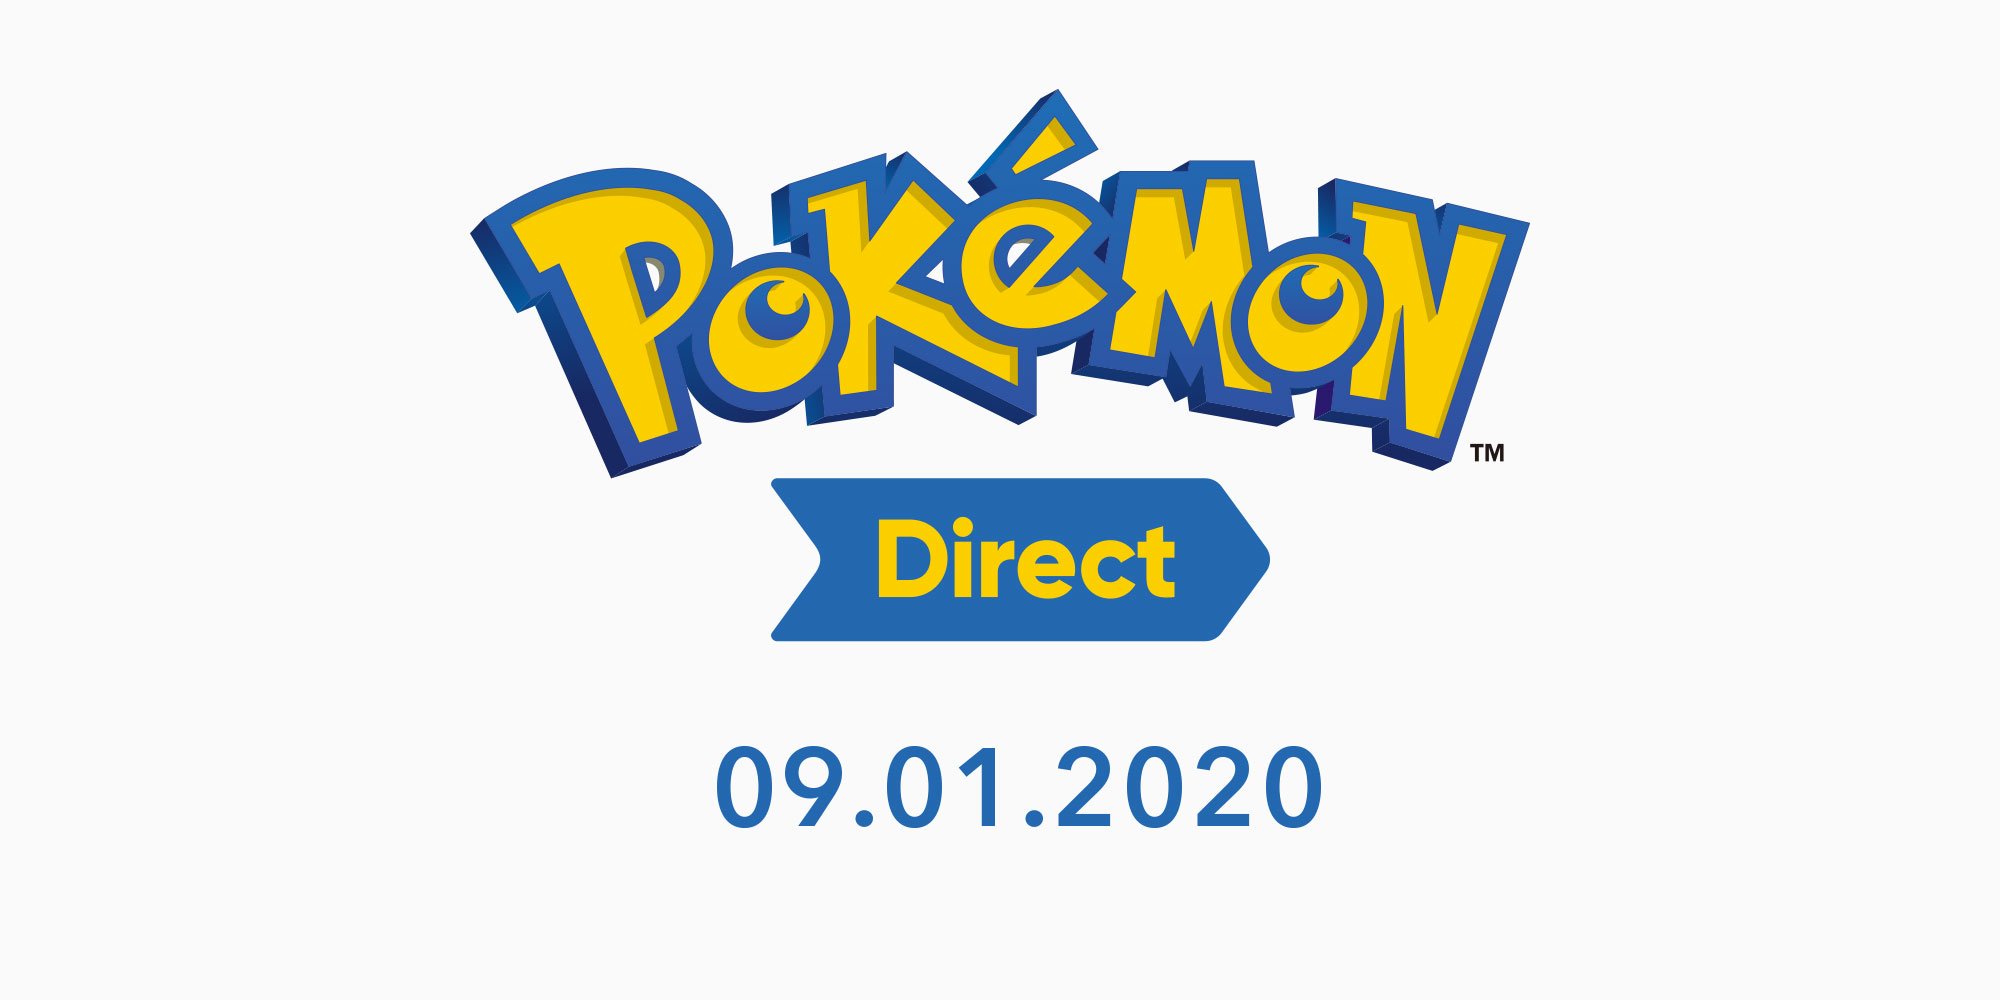 Pokémon Direct Das gibt es Neues! Erweiterungspass, Mystery Dungeon